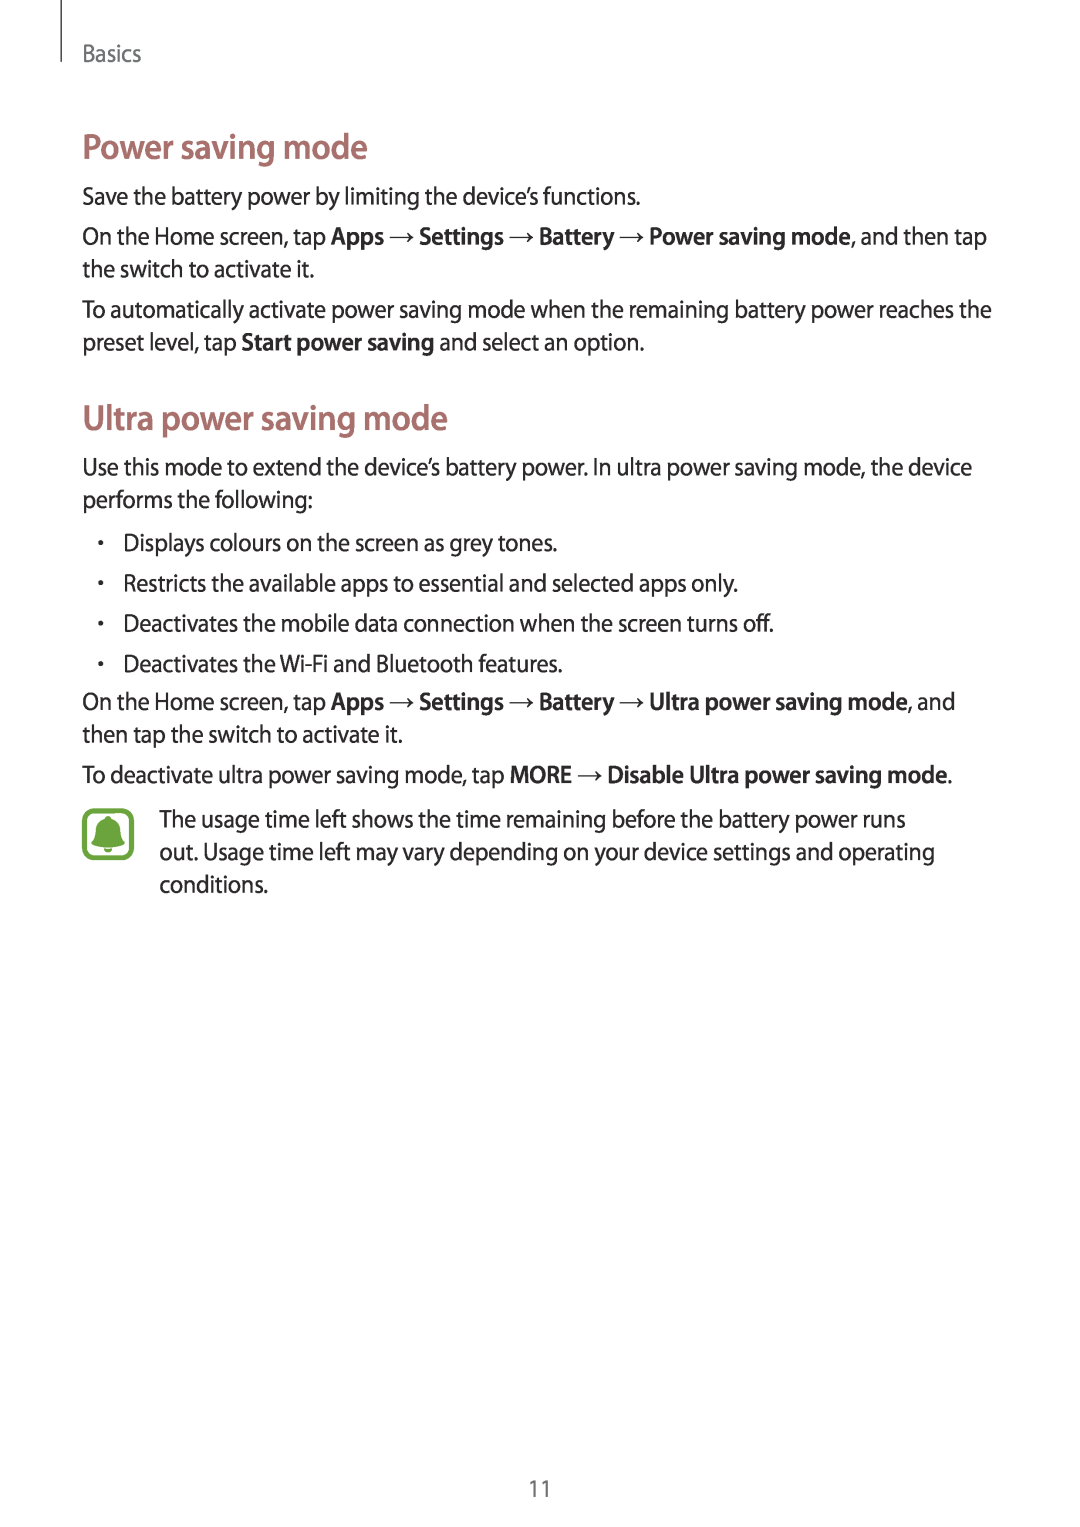 Samsung SM-T819NZKEPHE, SM-T819NZKEDBT, SM-T719NZKEDBT, SM-T719NZWEDBT Power saving mode, Ultra power saving mode, Basics 